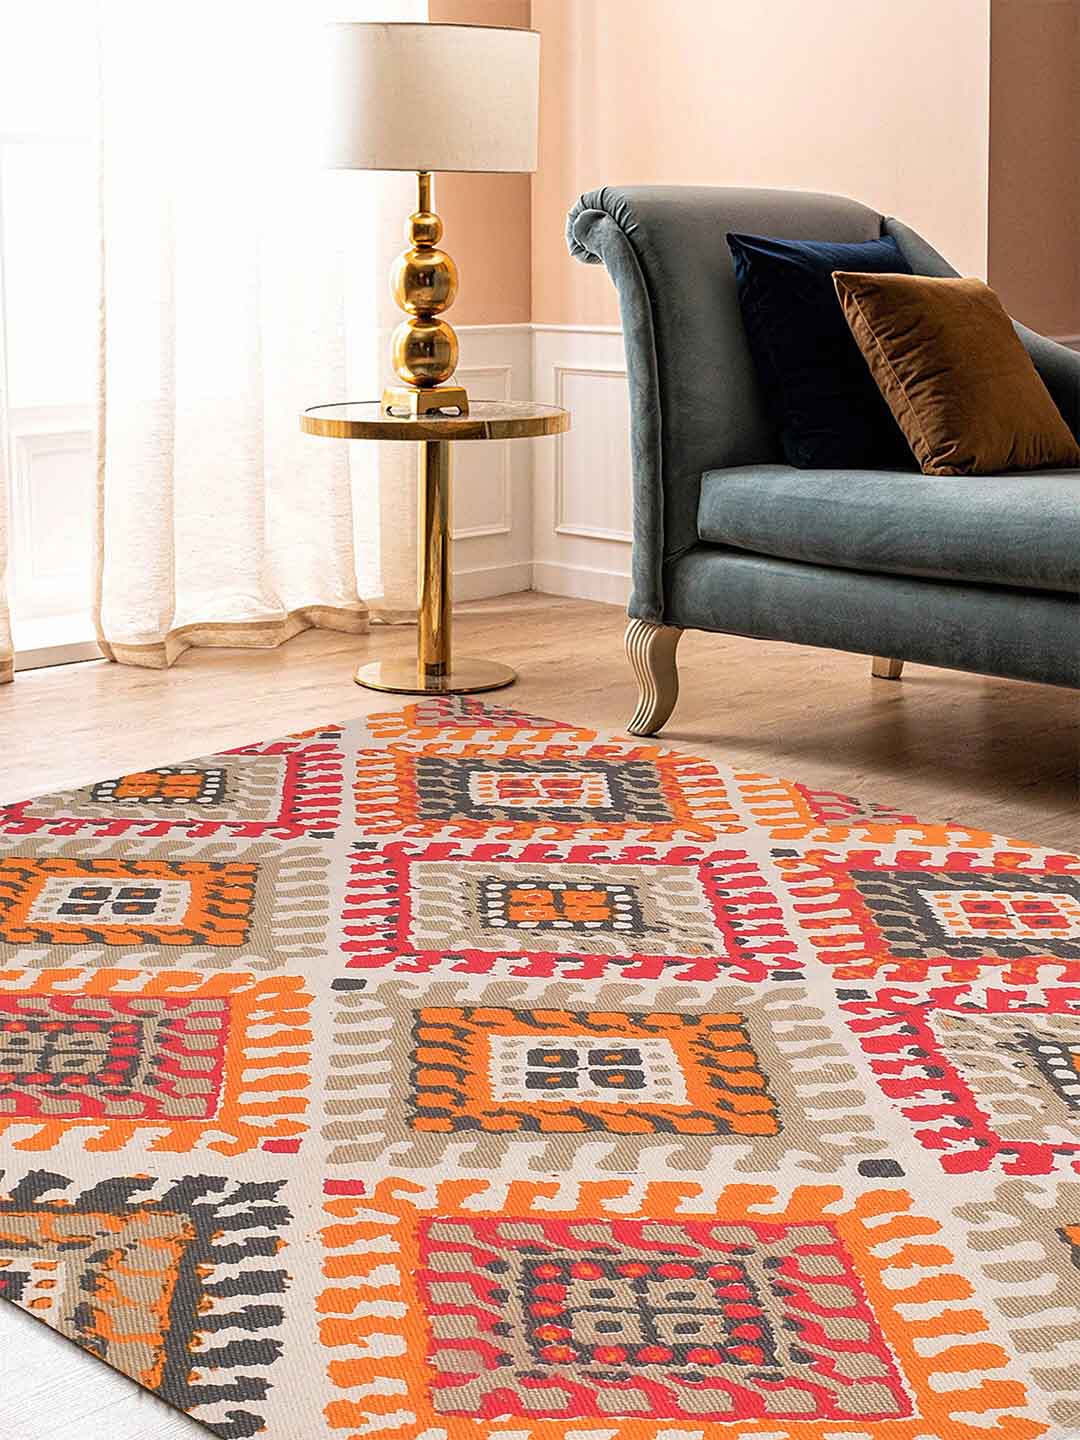 Rajwada Multicoloured Printed Cotton 4'x5.5' Carpet